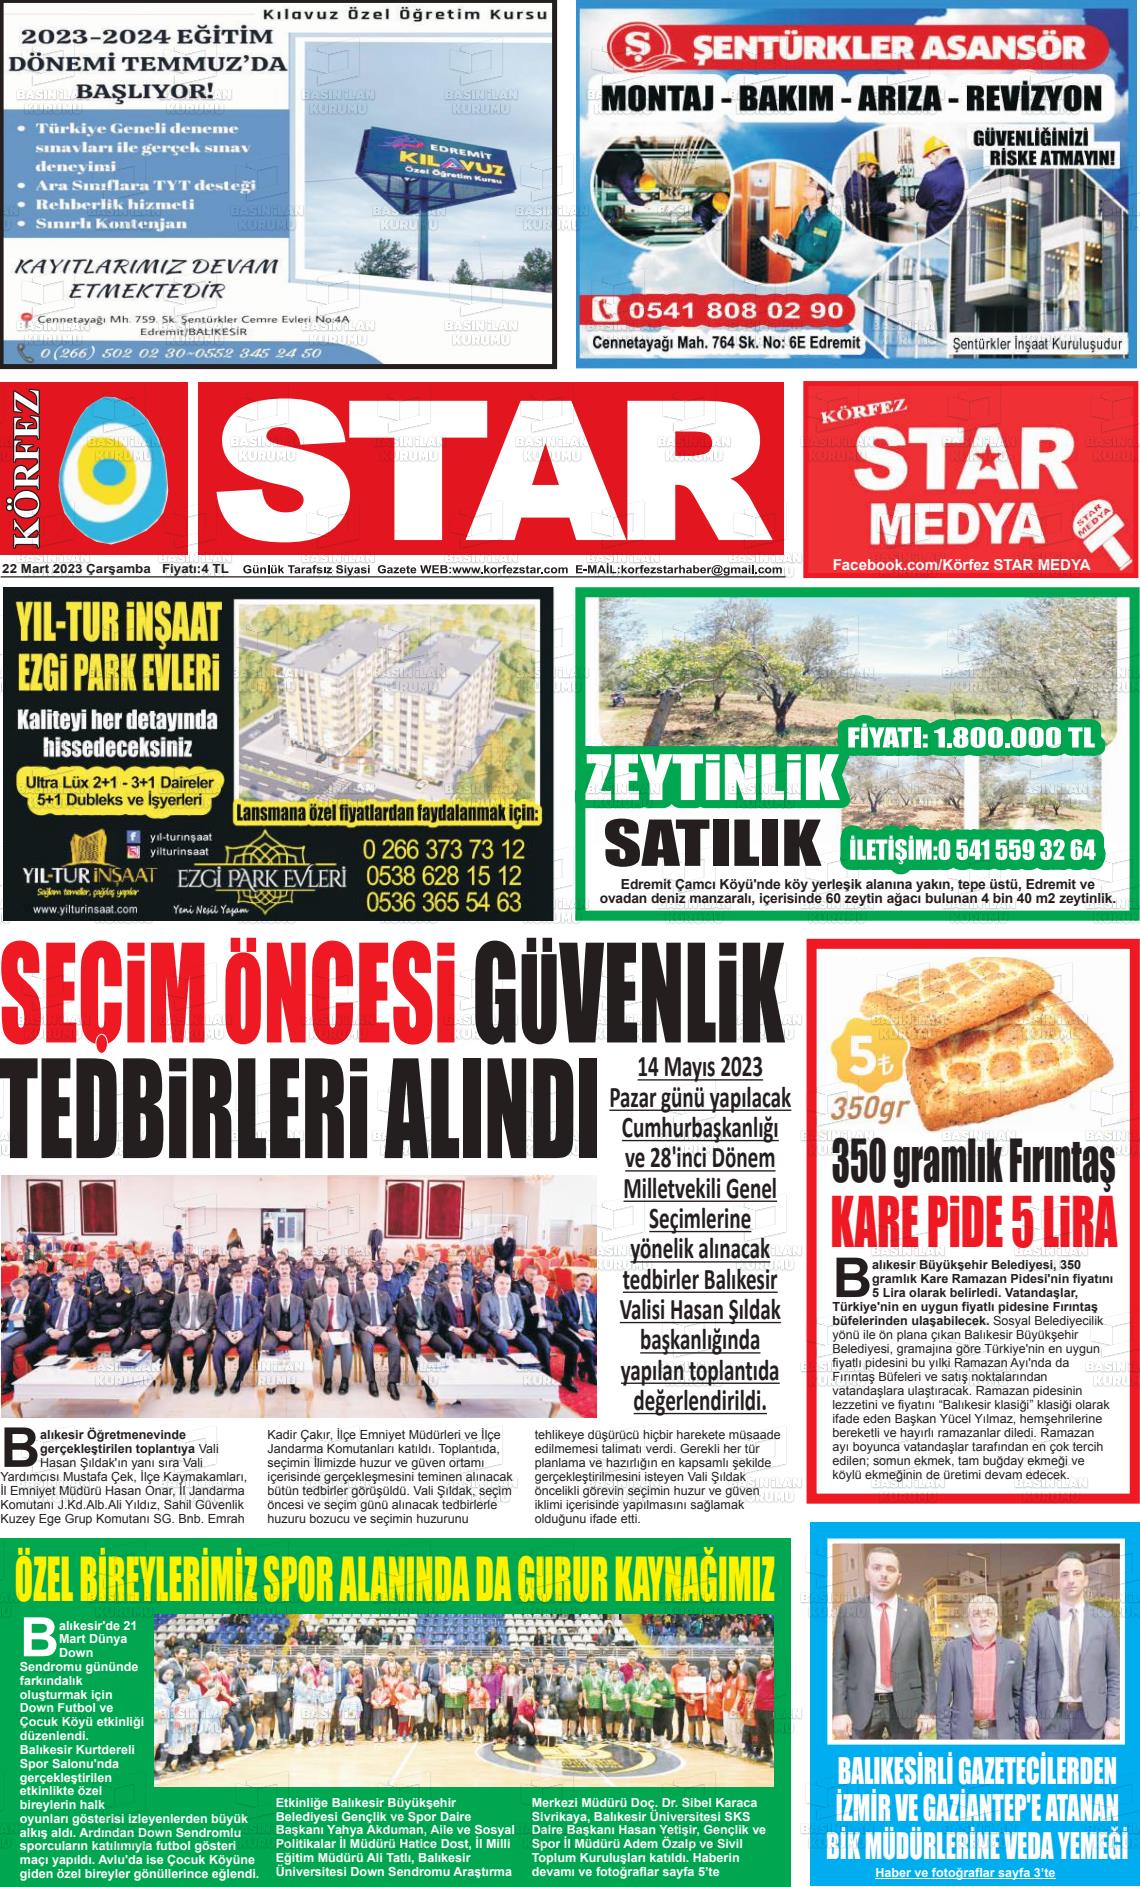 22 Mart 2023 Körfez Star Gazete Manşeti